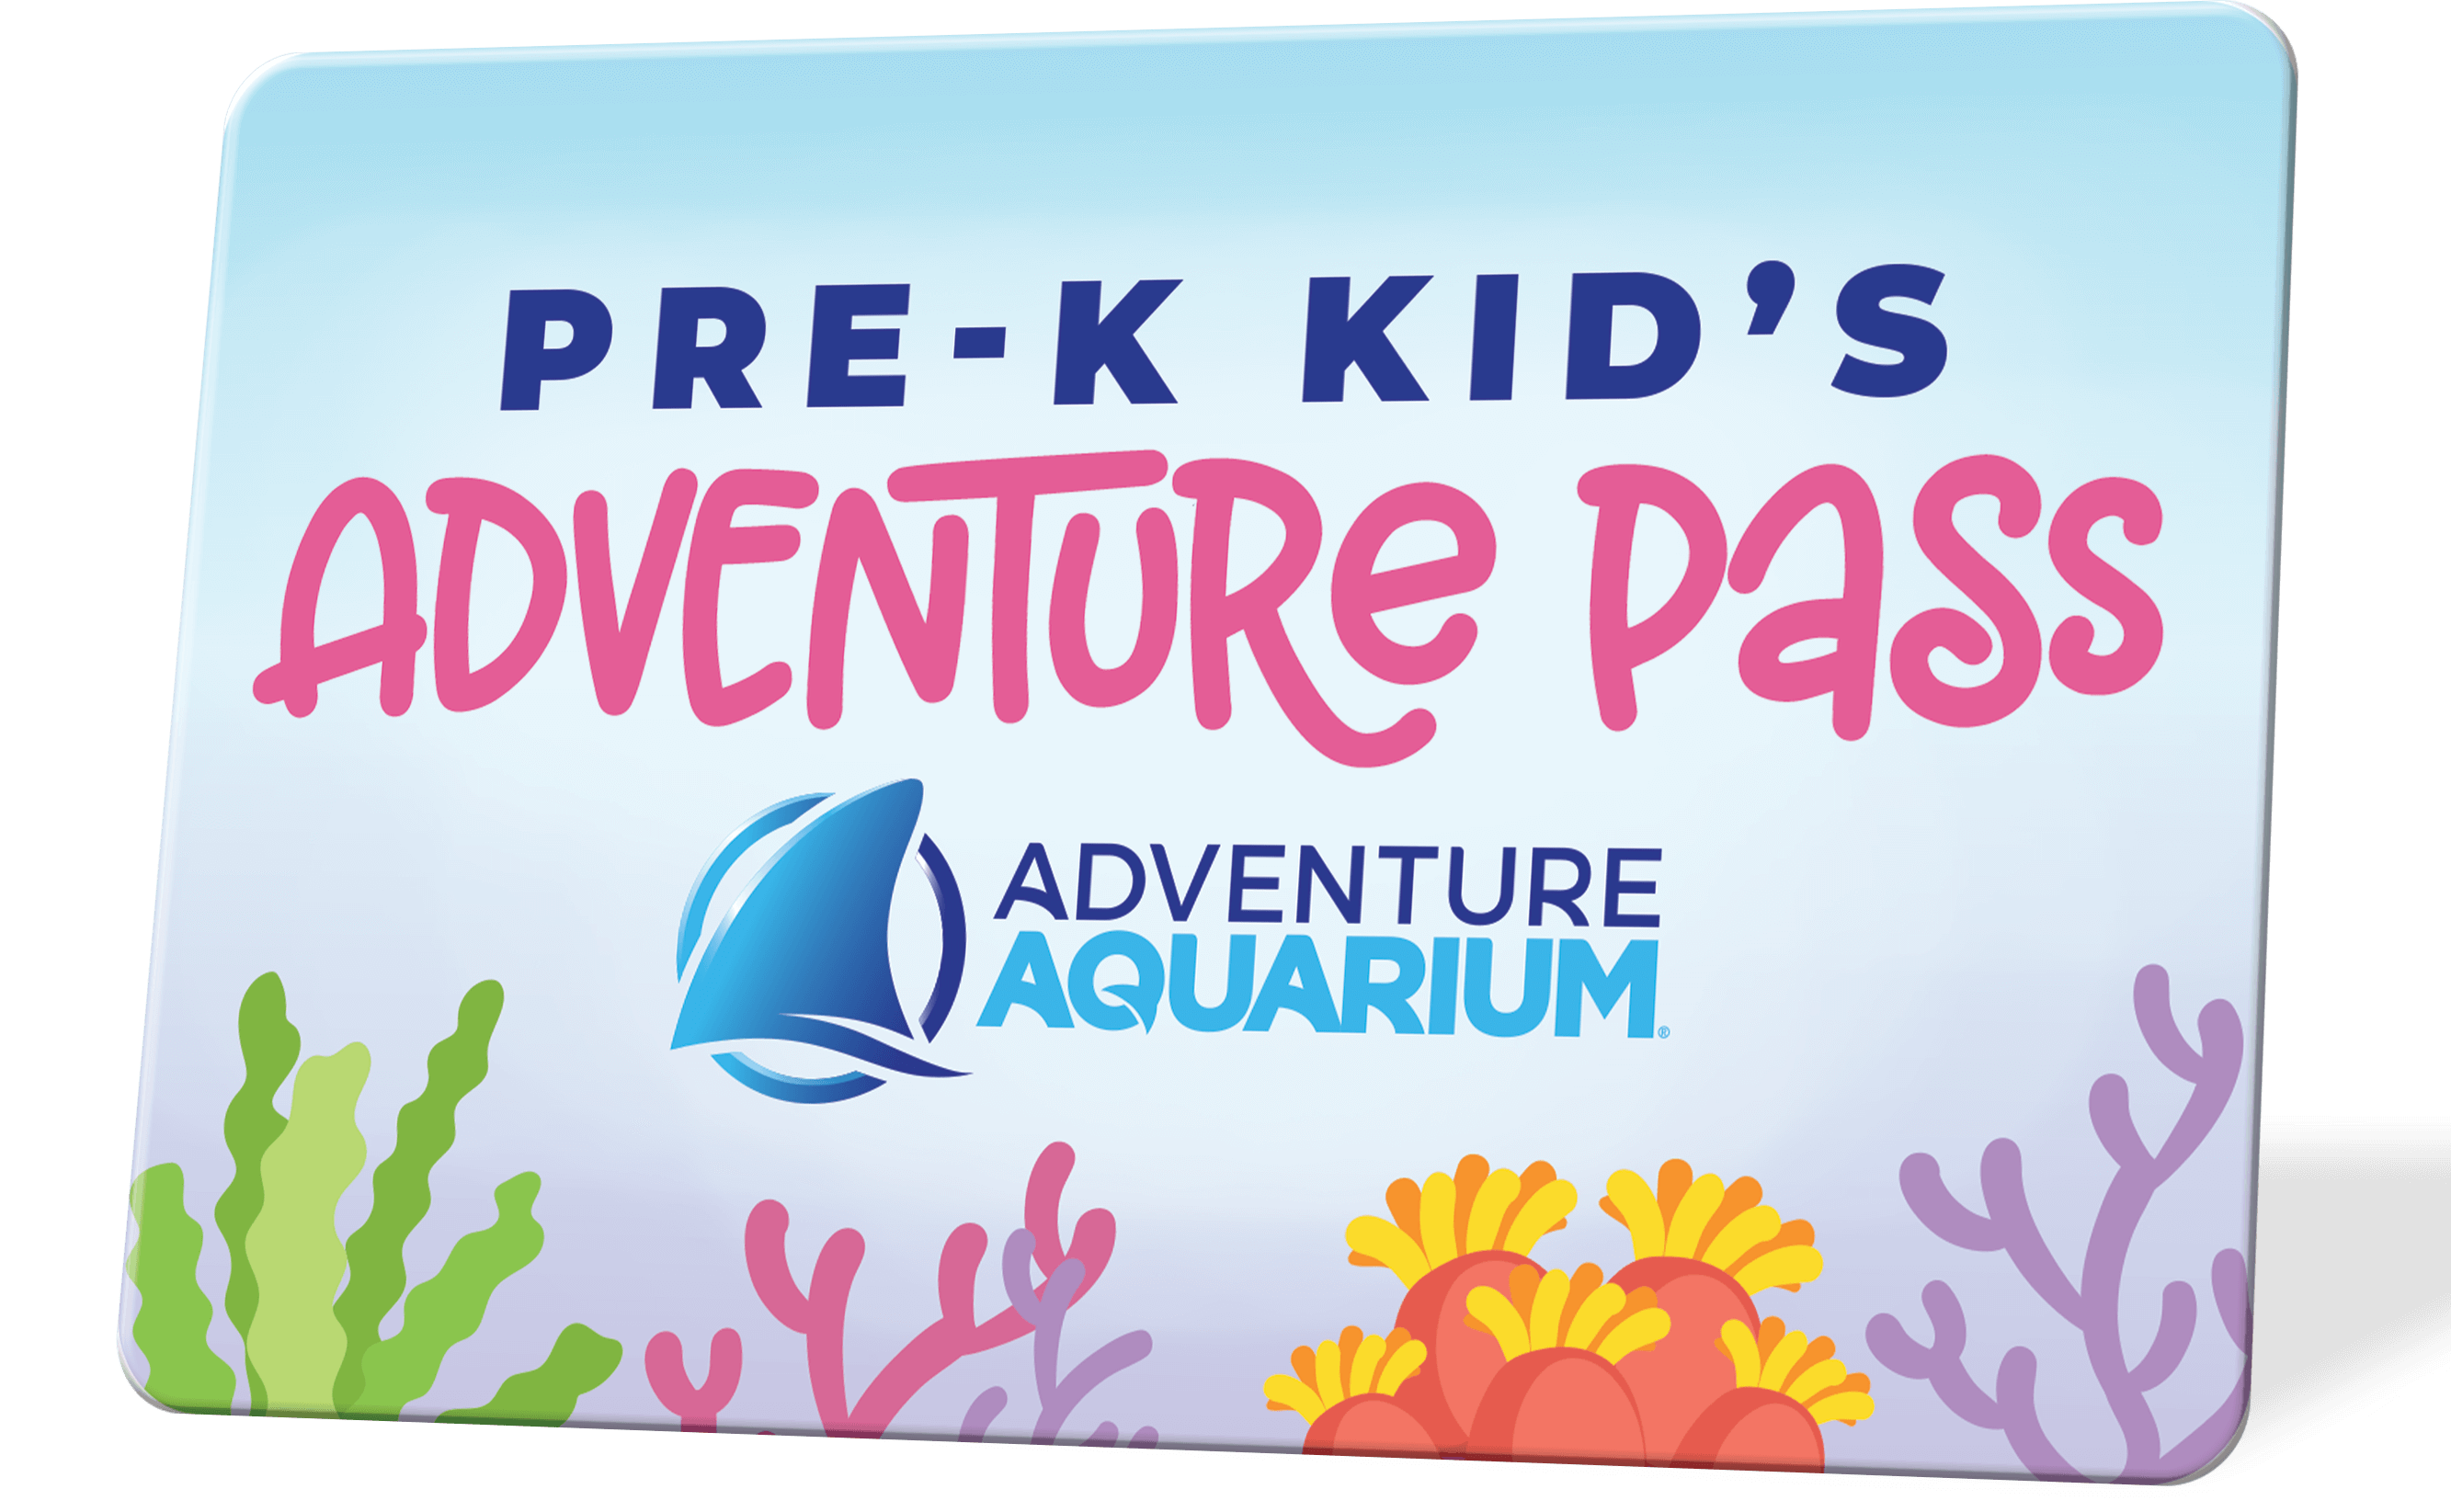 The Adventure Aquarium Pass 